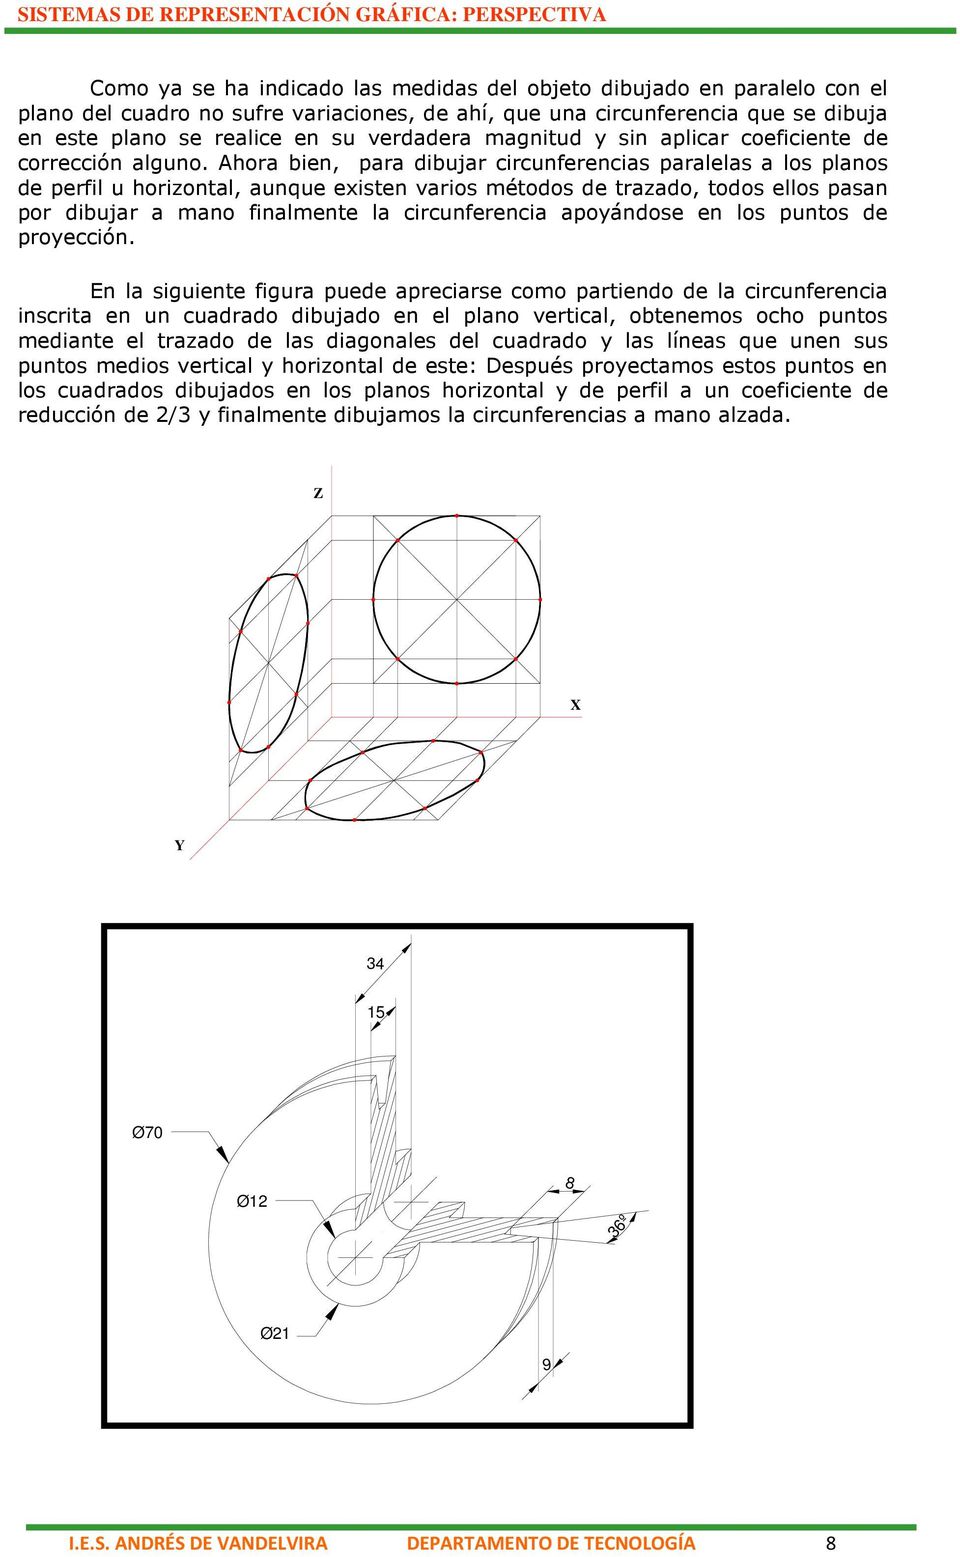 Ahora bien, para dibujar circunferencias paralelas a los planos de perfil u horizontal, aunque existen varios métodos de trazado, todos ellos pasan por dibujar a mano finalmente la circunferencia